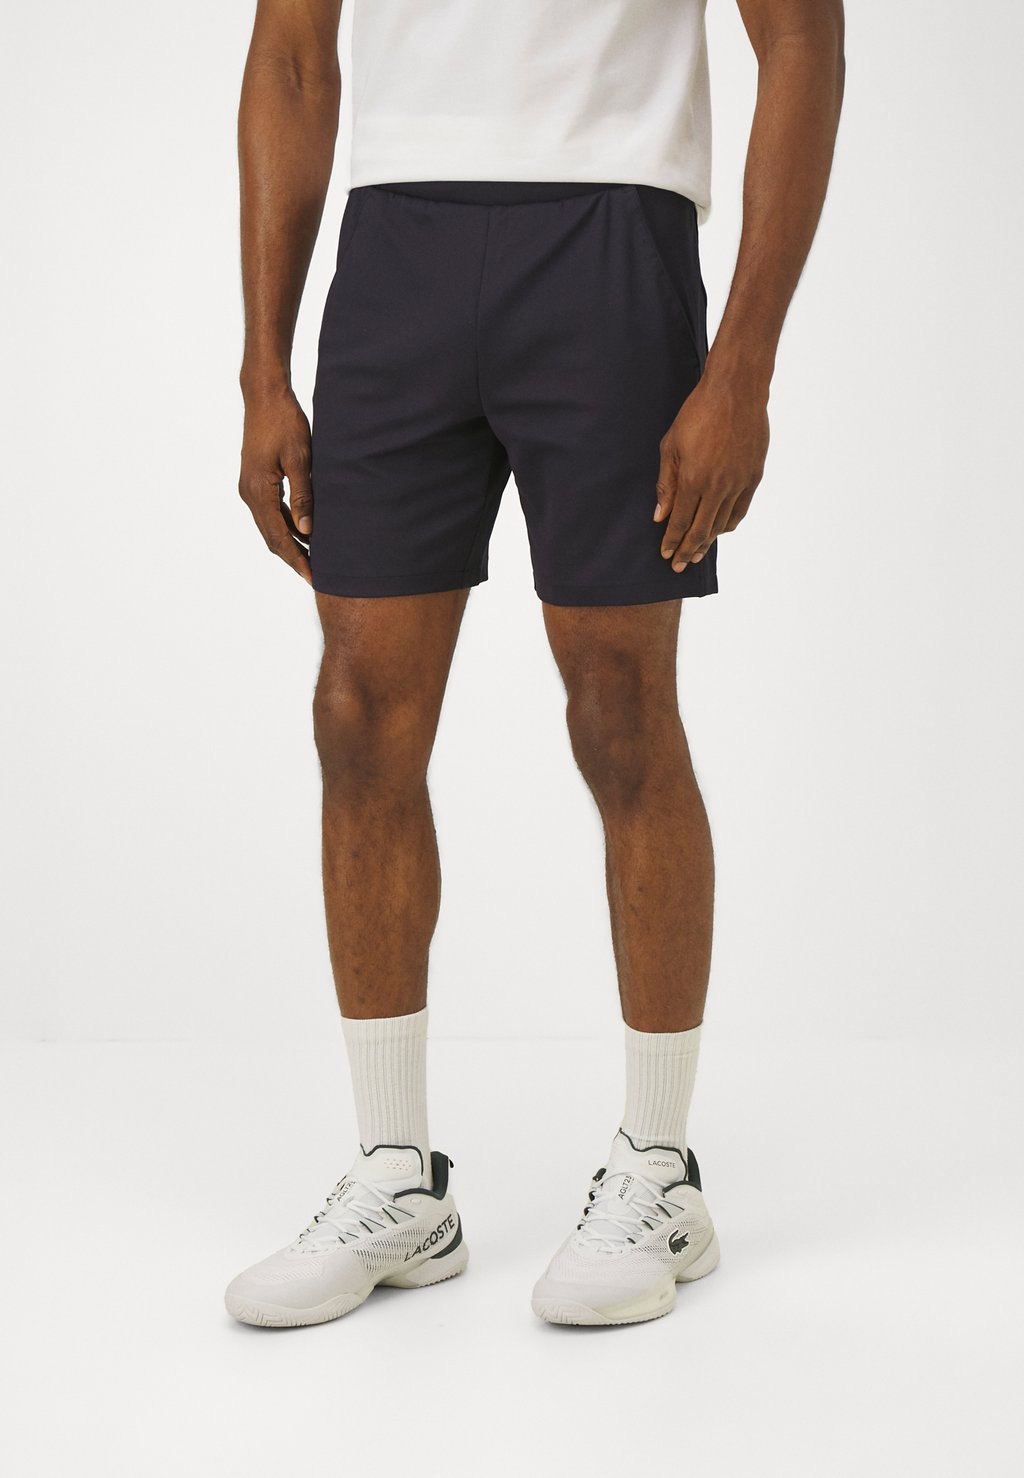 Спортивные шорты Tennis Shorts Heritage Lacoste, цвет bleu marine спортивные шорты shorts tennis players lacoste sport цвет navy blue